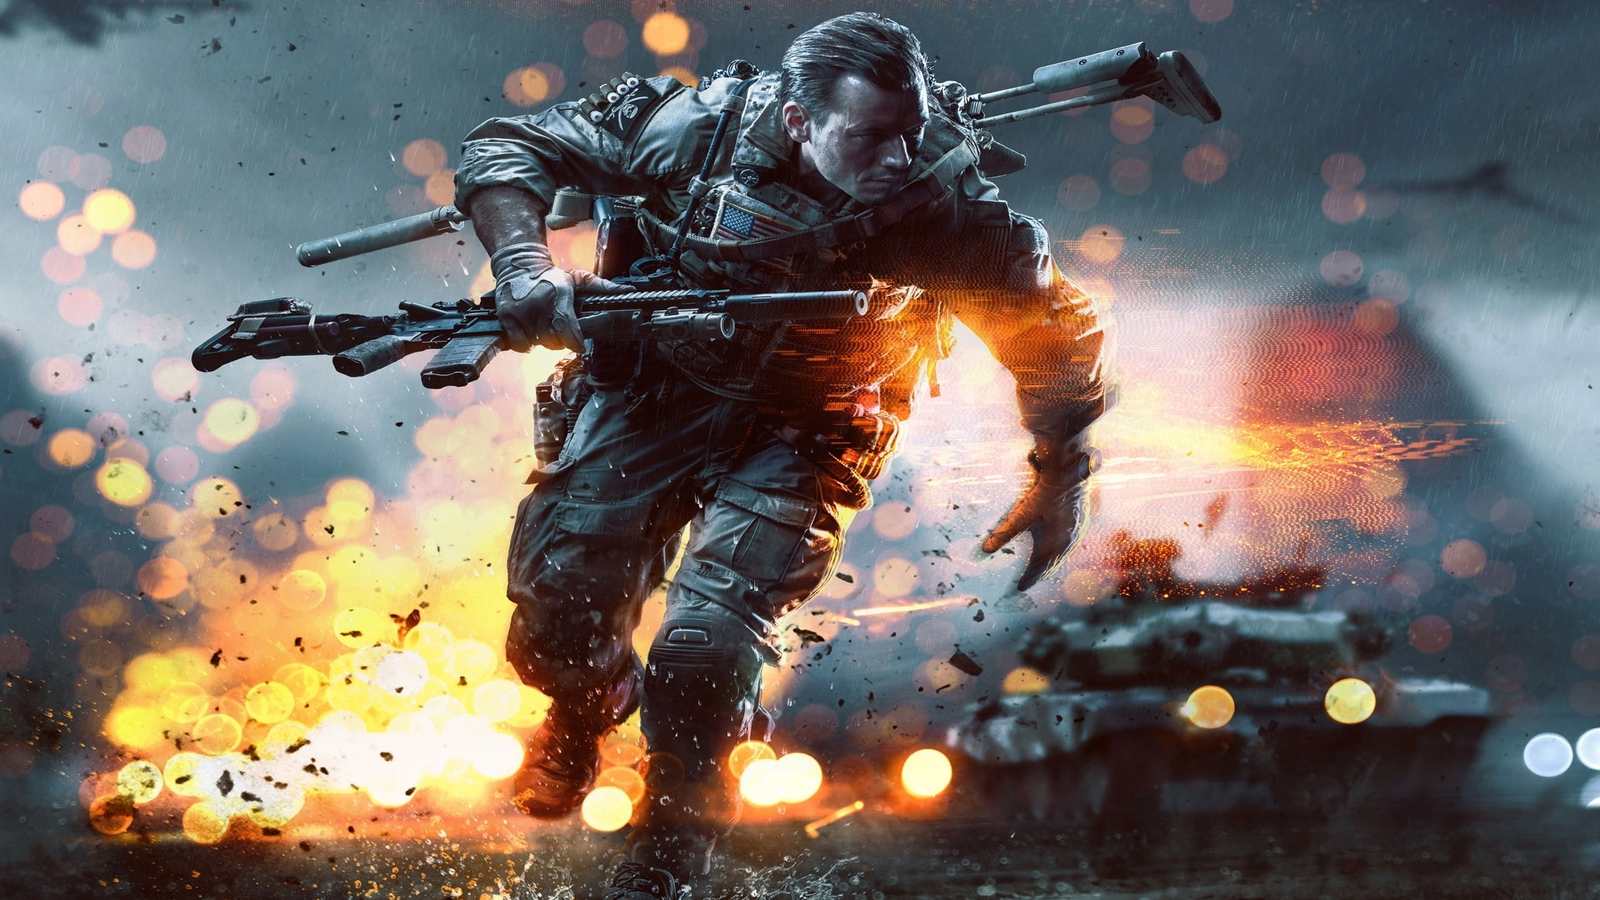 Battlefield 4: Xbox 360 vs. PS3 Comparison 